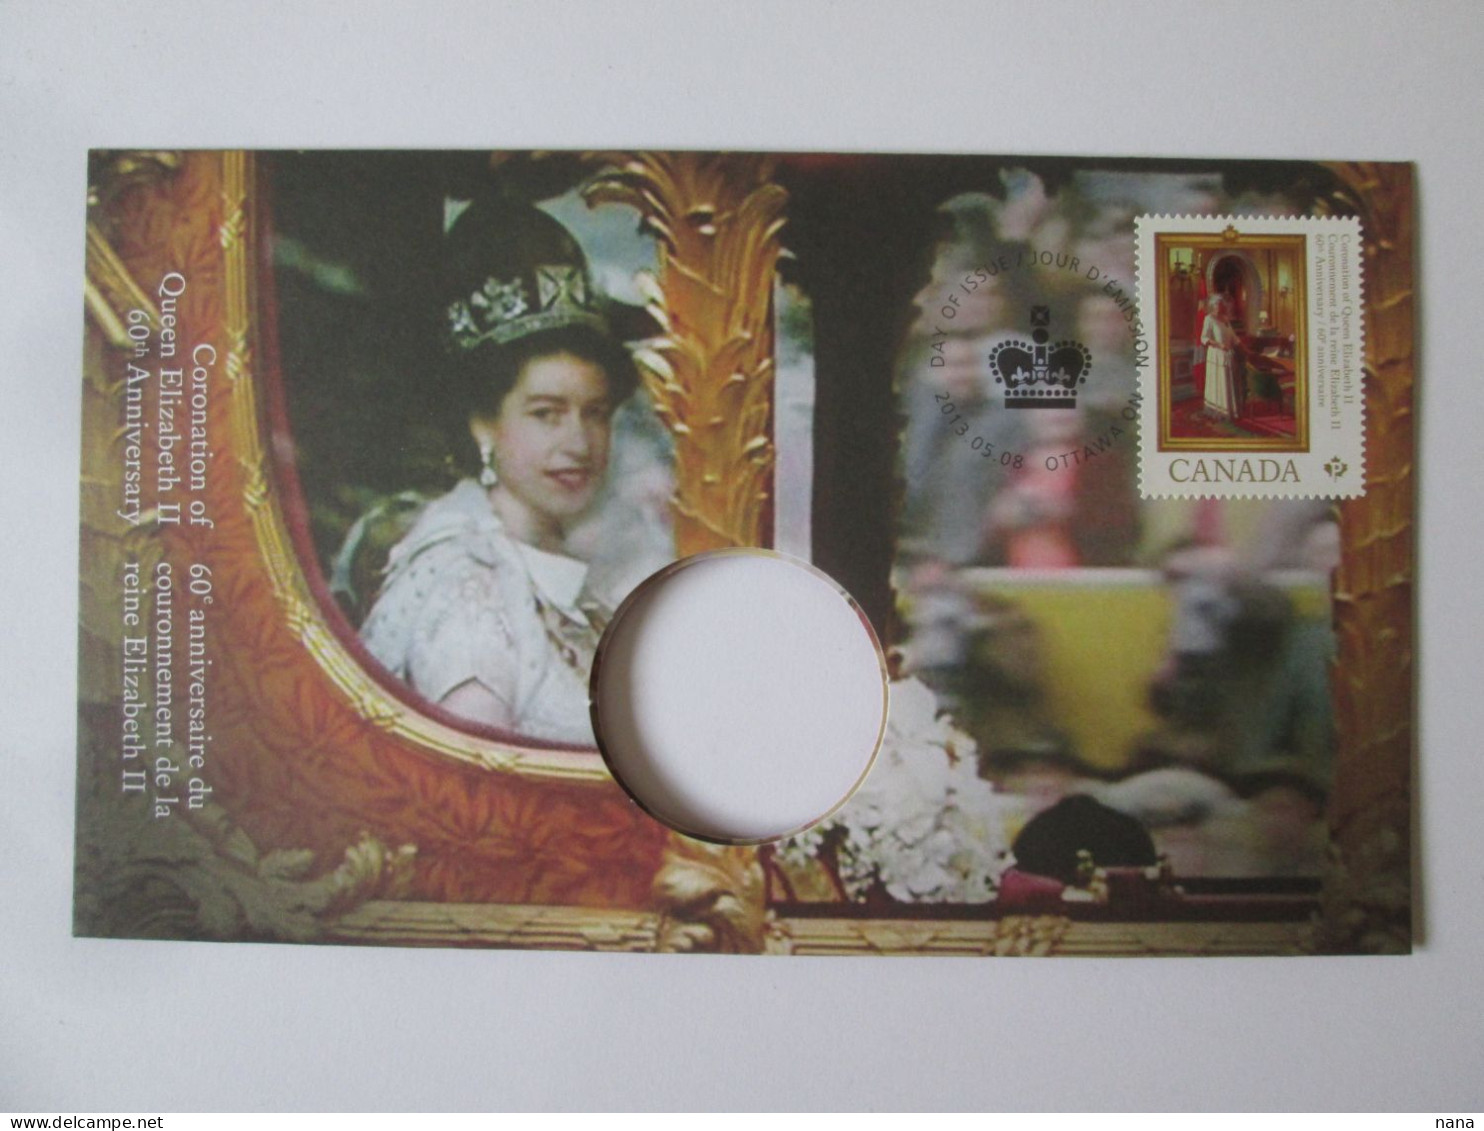 Canada Envel.philatelique Sans Monnaie,reine Elizabeth II,60e Anniv.tirage Limite A 10000/Philat.cover Without Coin2013 - Storia Postale